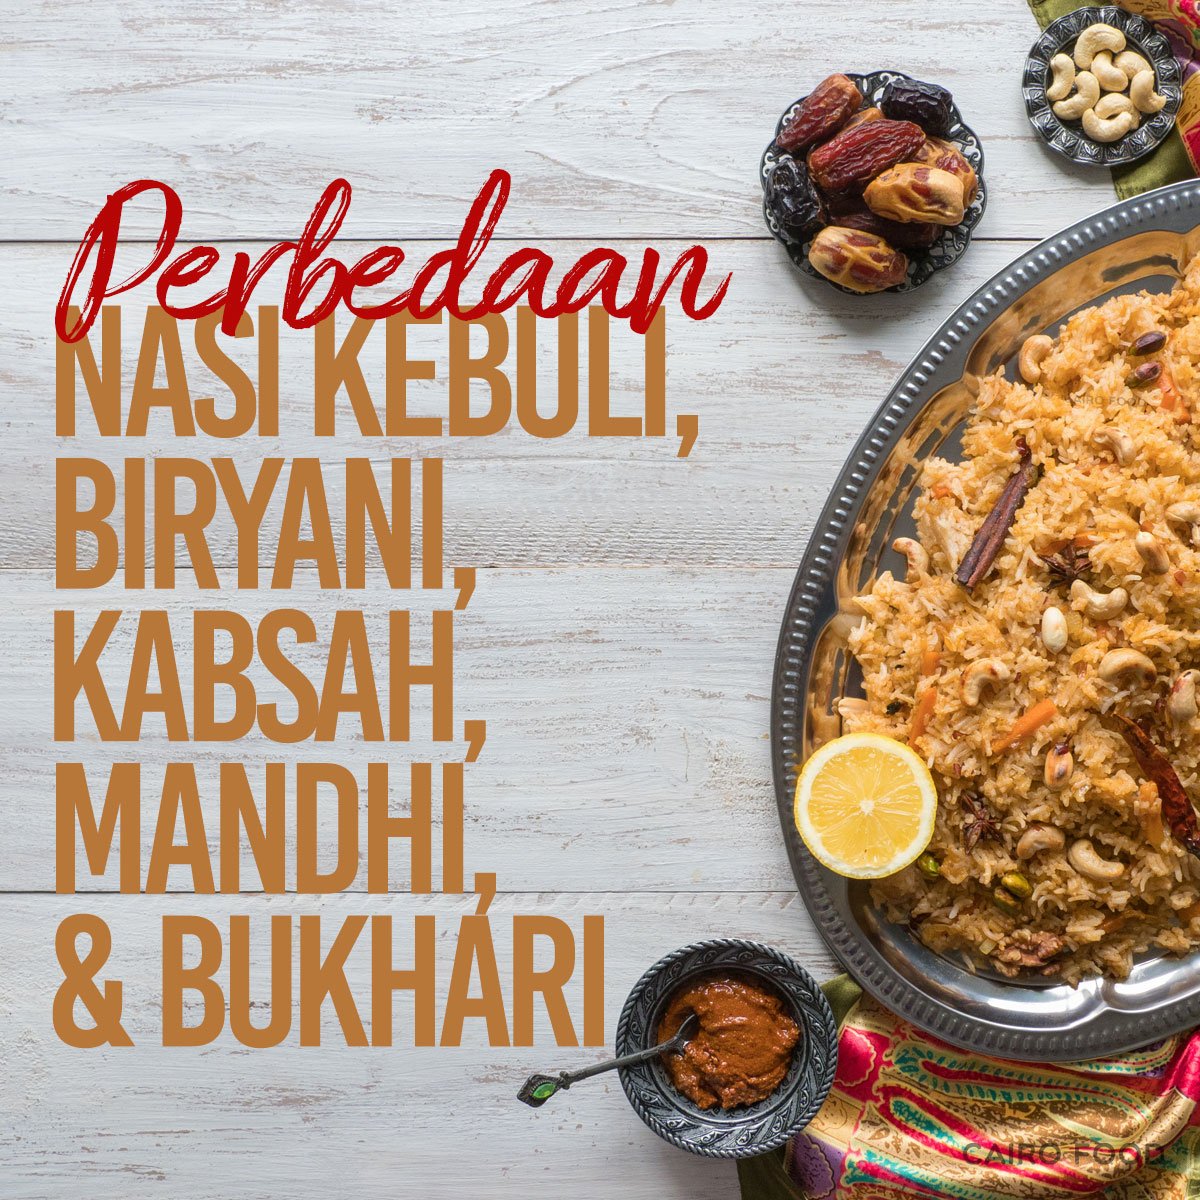 Perbedaan Nasi Kebuli, Briyani, Kabsah, Mandhi, Dan Bukhari